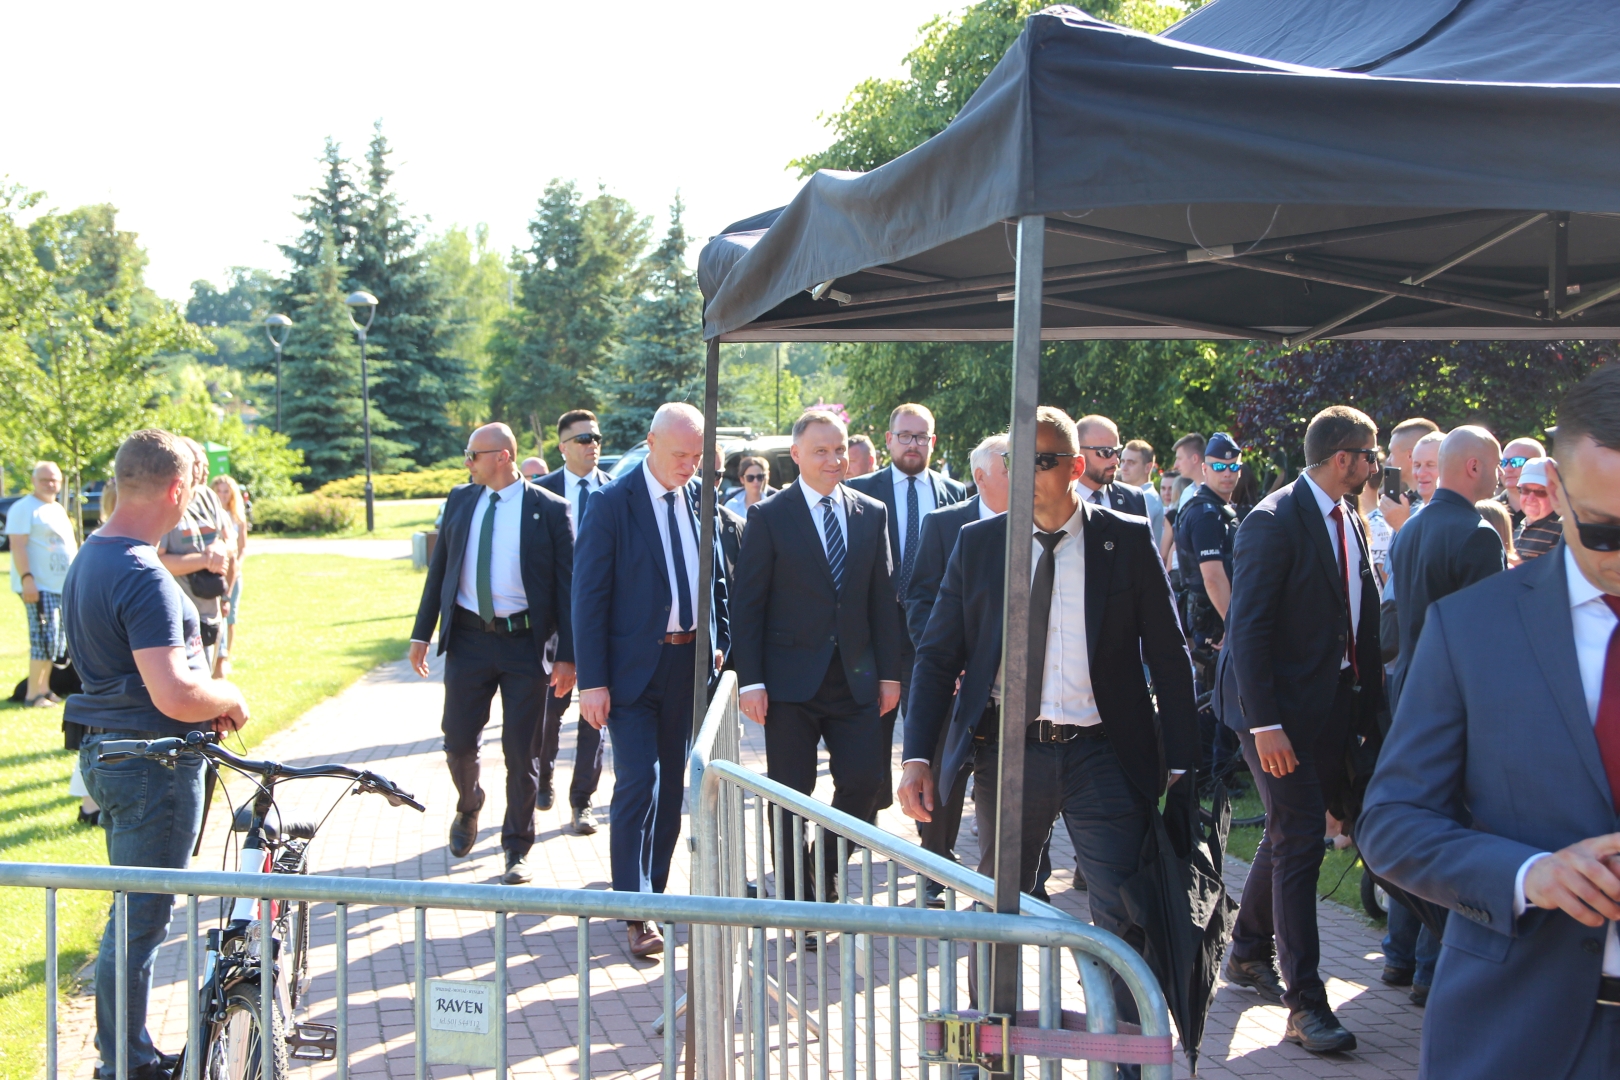 Spotkanie z Prezydentem RP Andrzejem Duda
